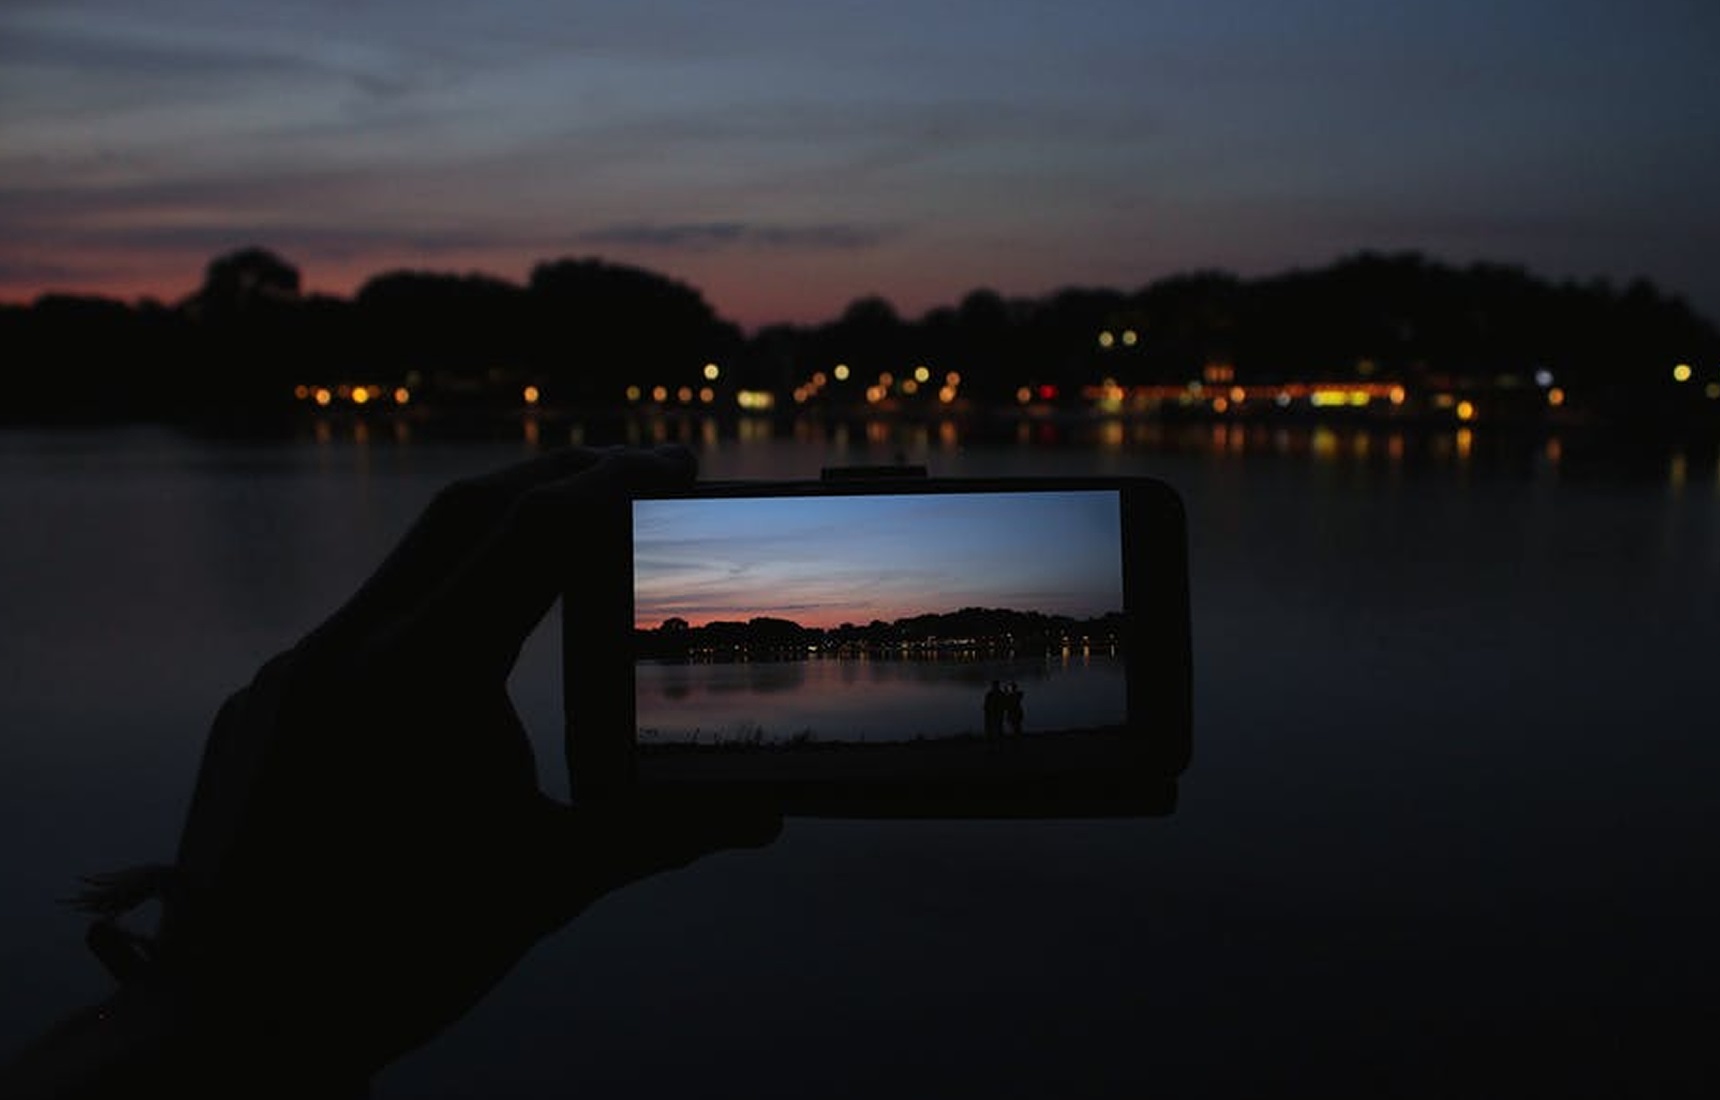 Jak fotografować smartfonem w nocy